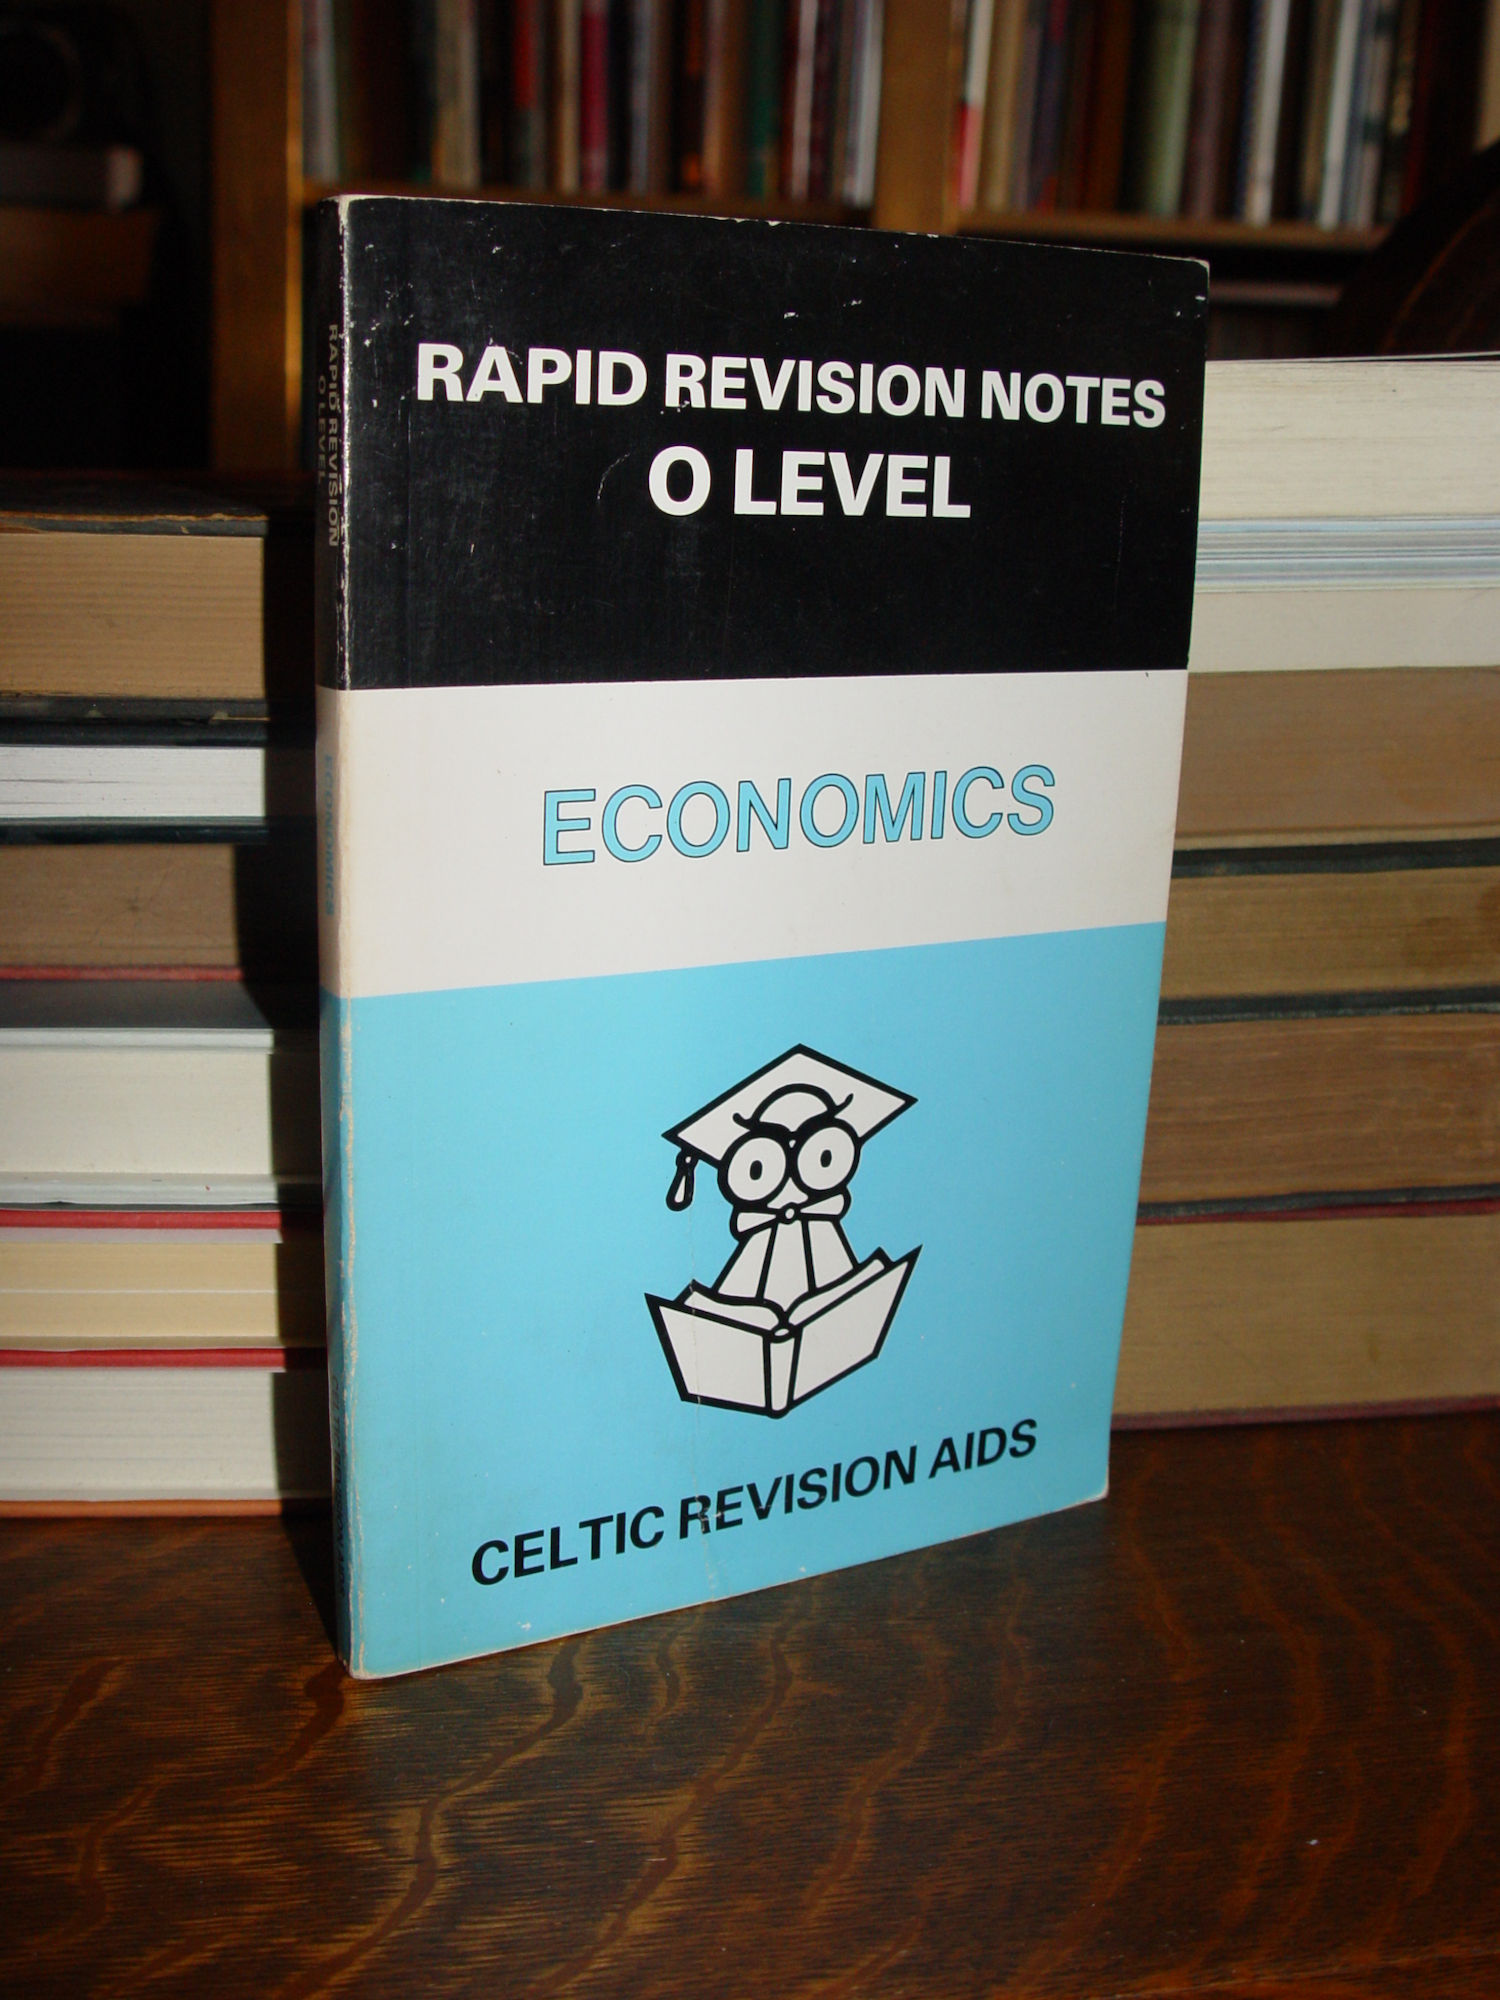 Economics (Rapid revision notes, Celtic
                        Aid) 1980 by Alan Stephen